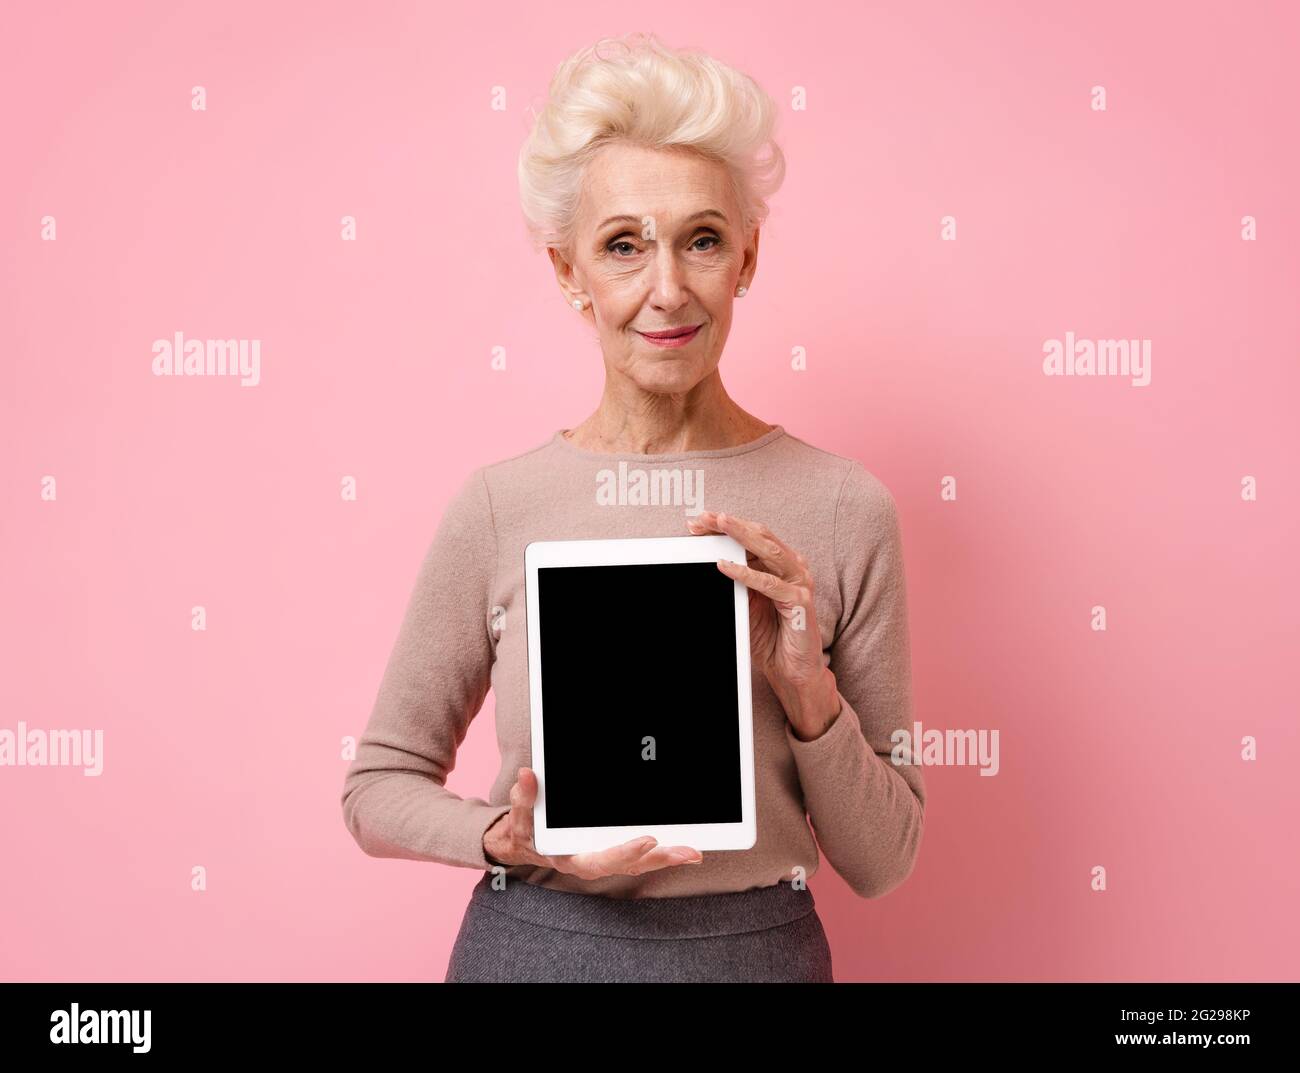 Femme souriante tenant une tablette numérique avec un écran vierge. Photo d'une femme âgée sur fond rose. Banque D'Images